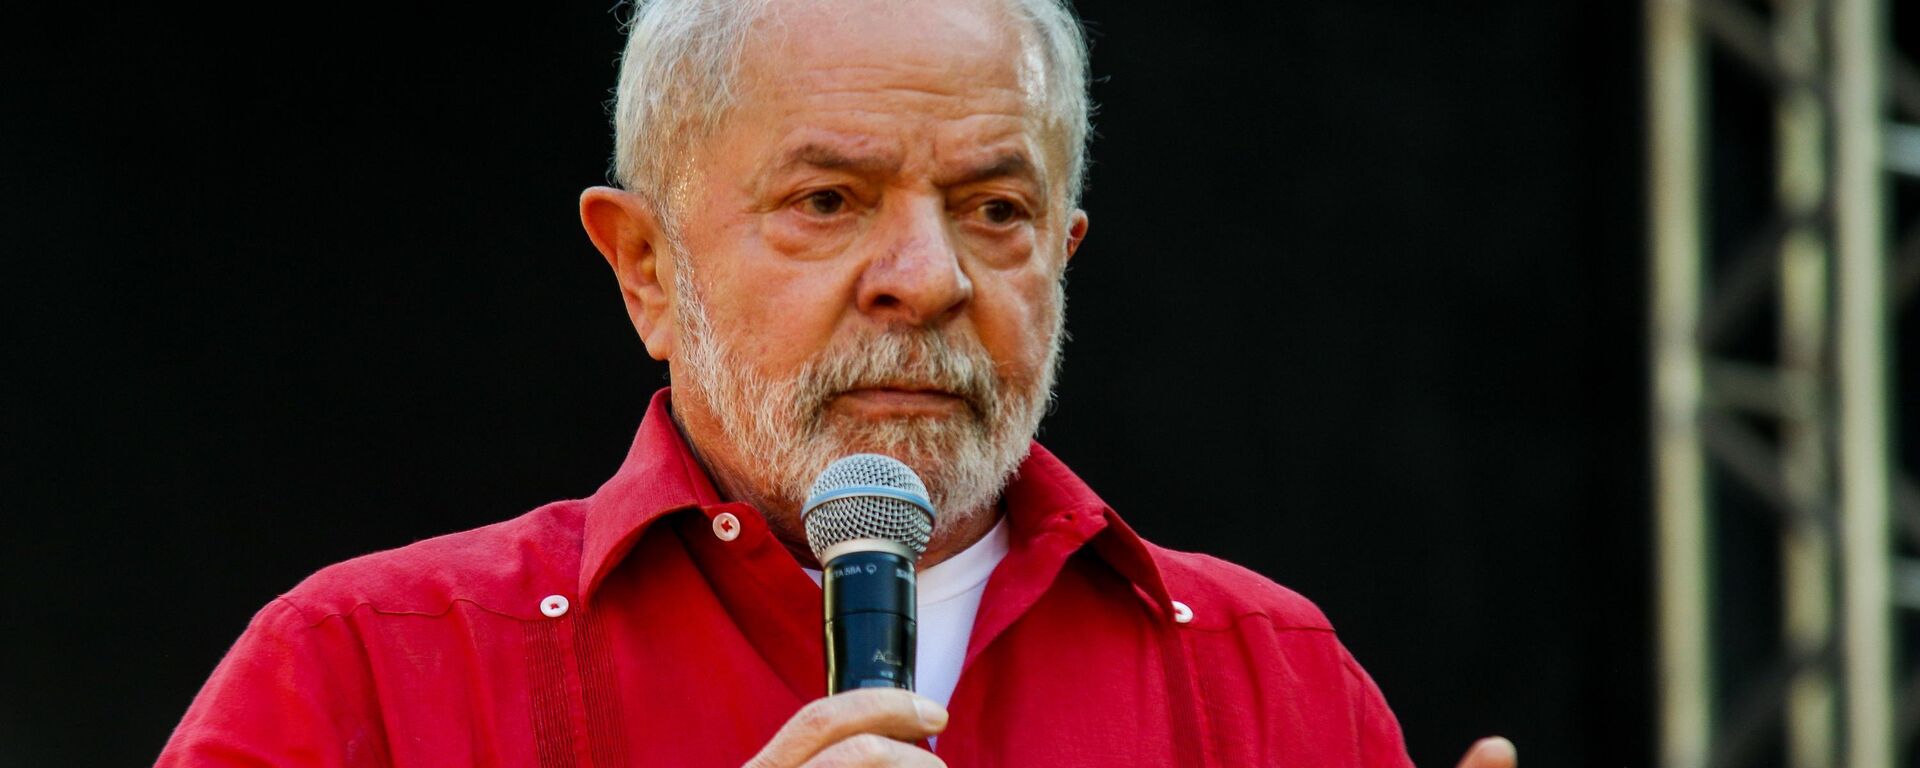 O pré-candidato à Presidência Luiz Inácio Lula da Silva (PT), na foto, com Geraldo Alckmin (PSB), participa de ato público do PT na cidade de Diadema (SP), em 9 de julho de 2022 - Sputnik Brasil, 1920, 25.07.2022